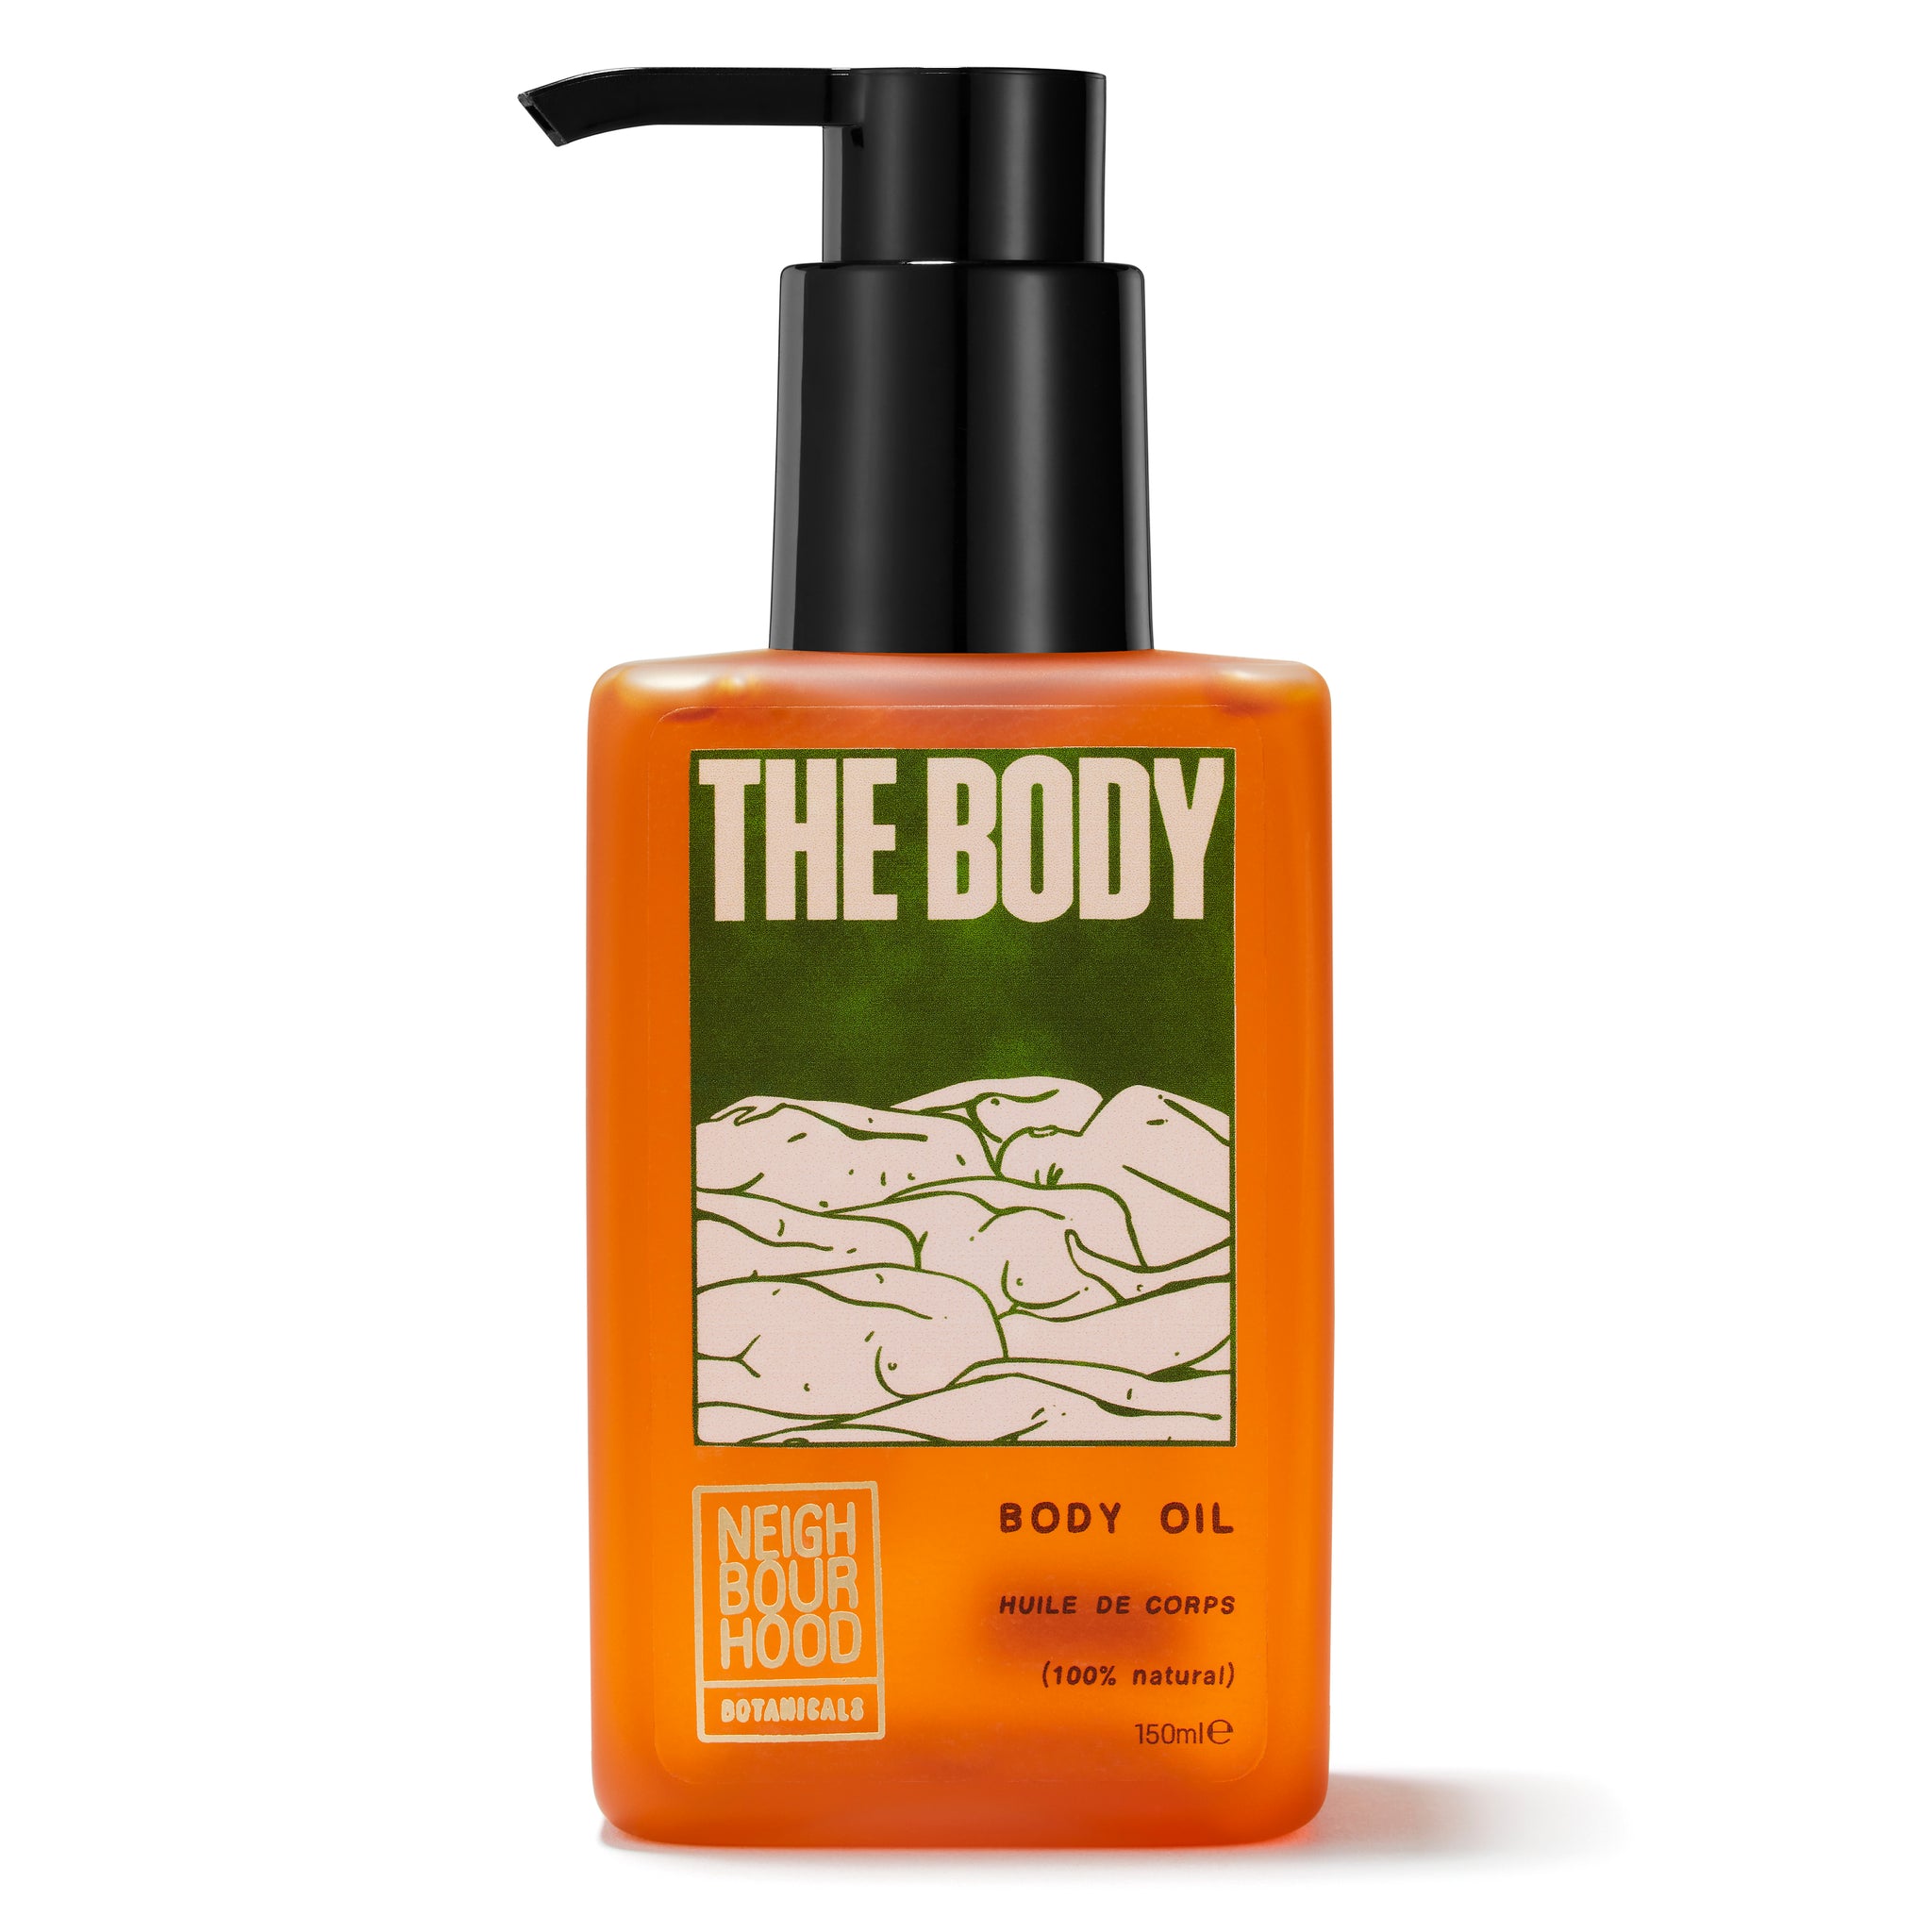 The Body Oil